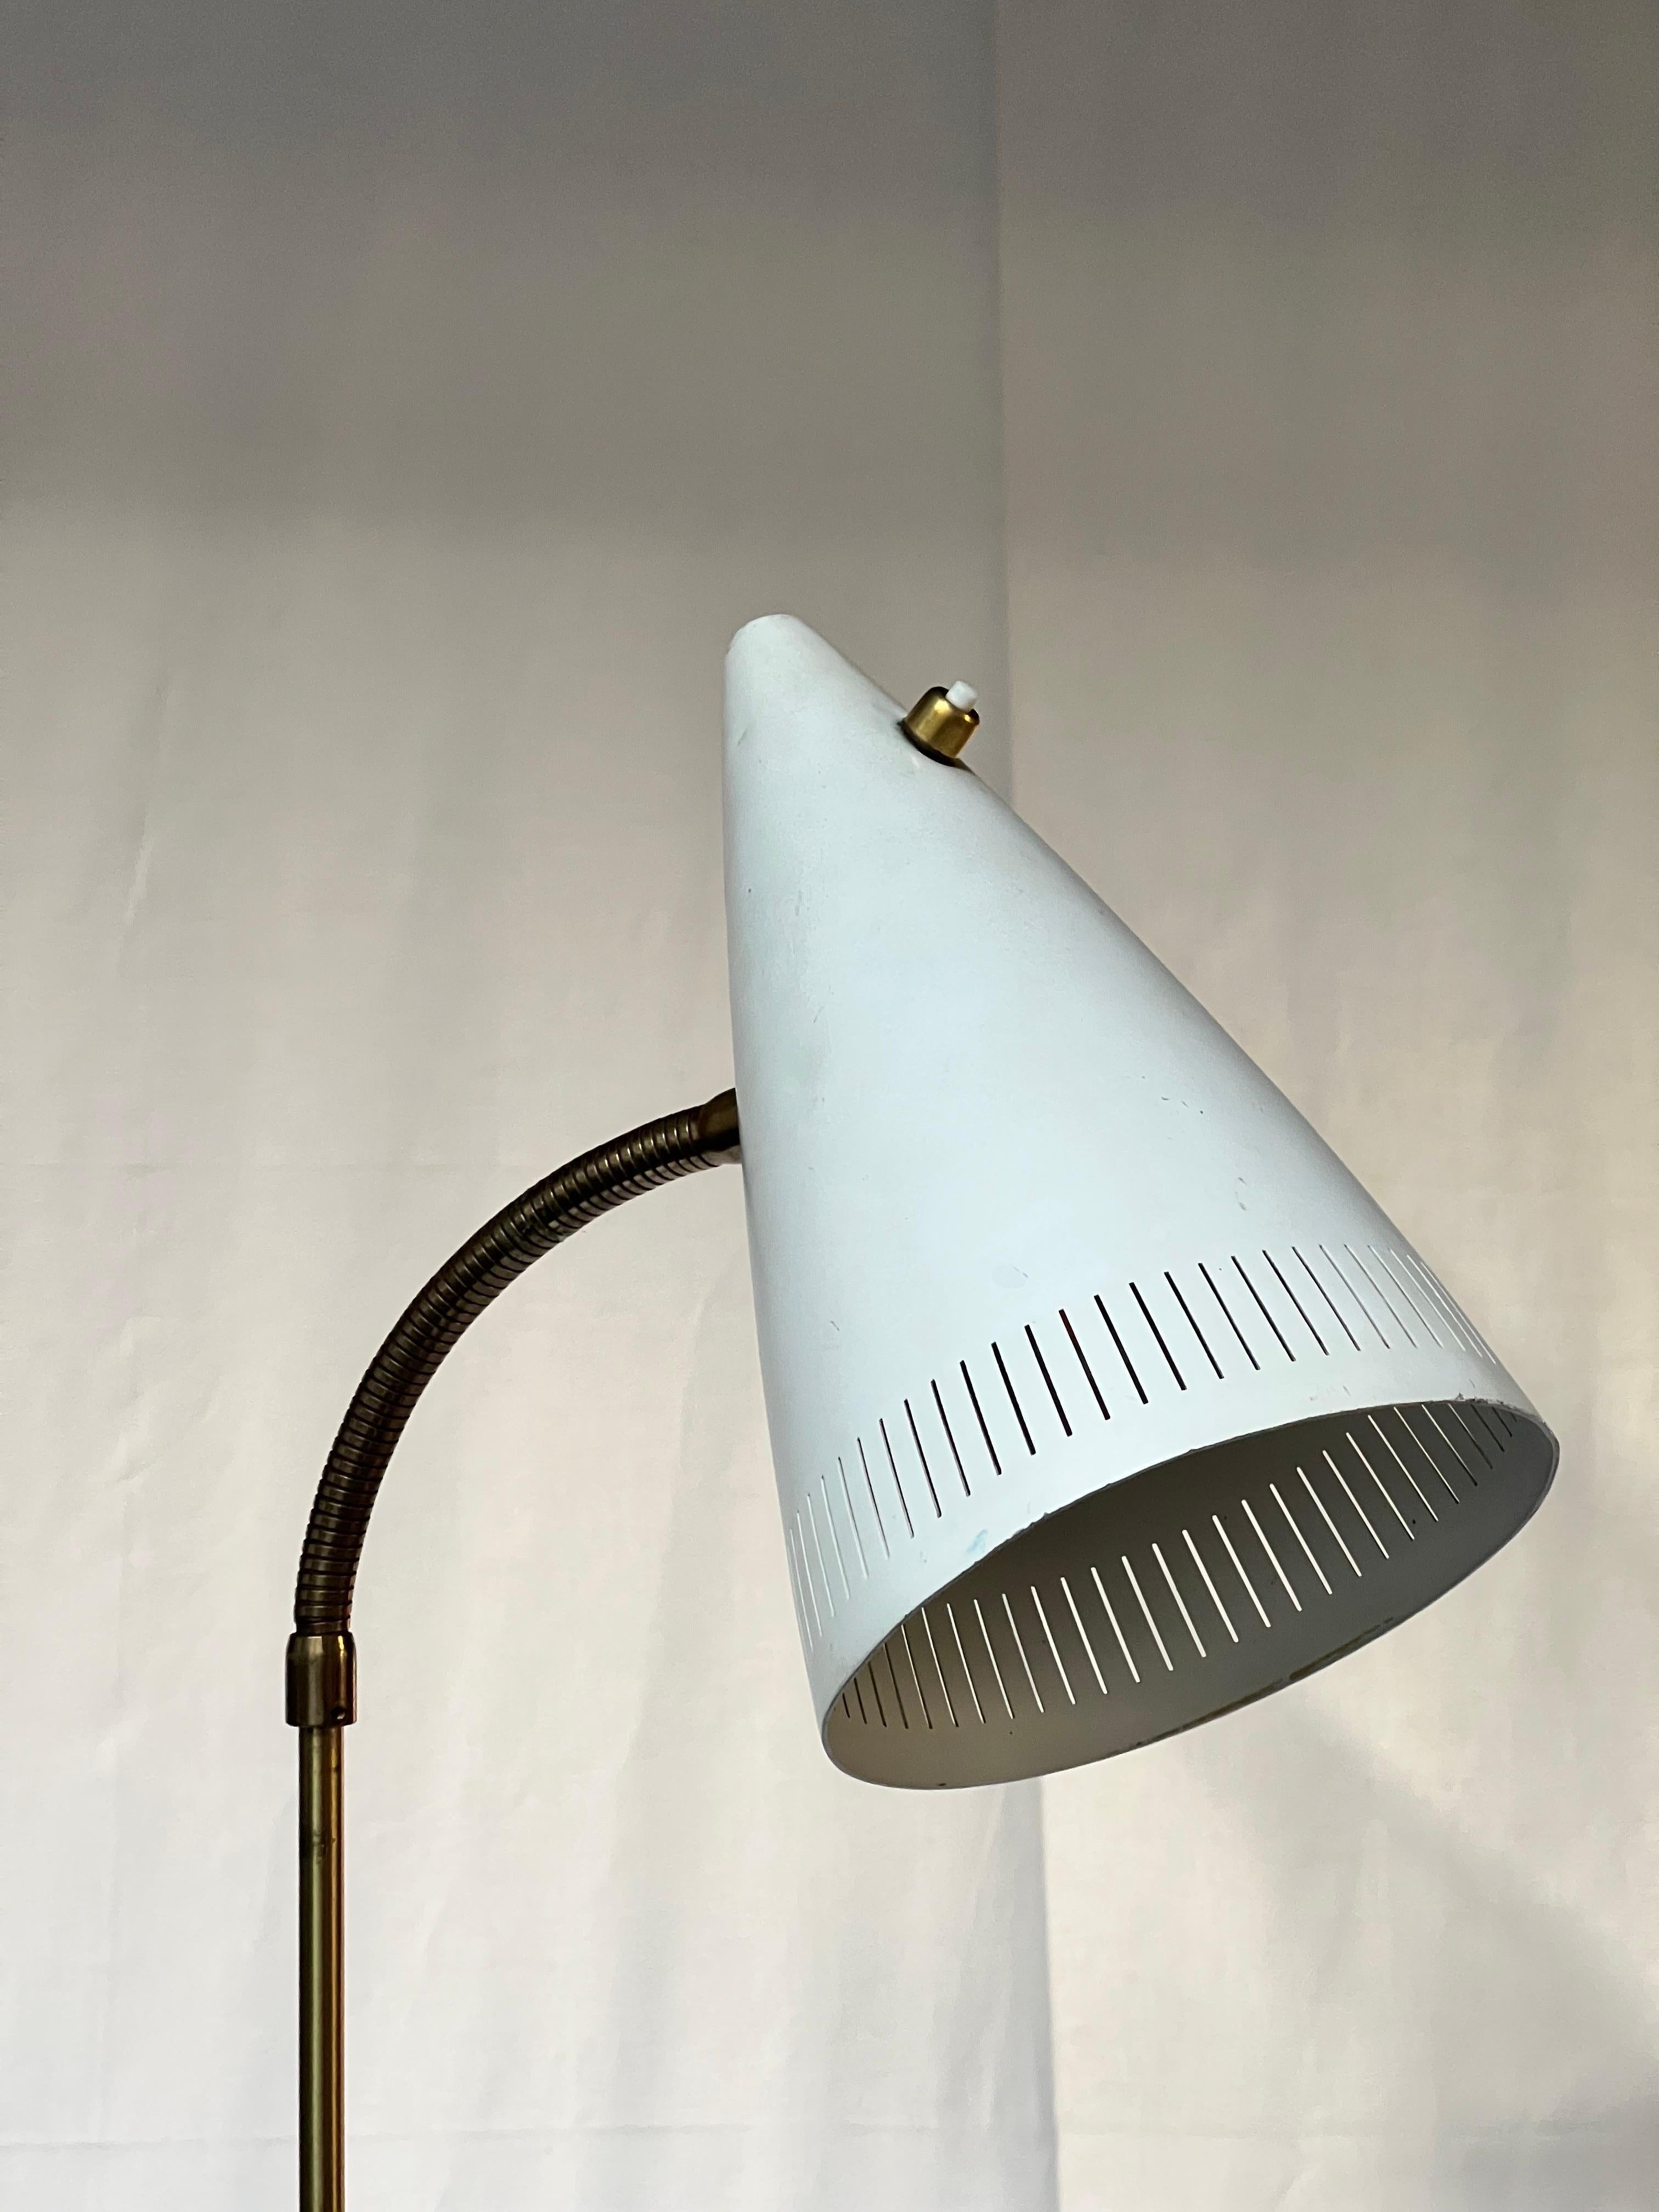 Falkenberg Brass Floor Lamp Adjustable in Height Sweden 1960's 3